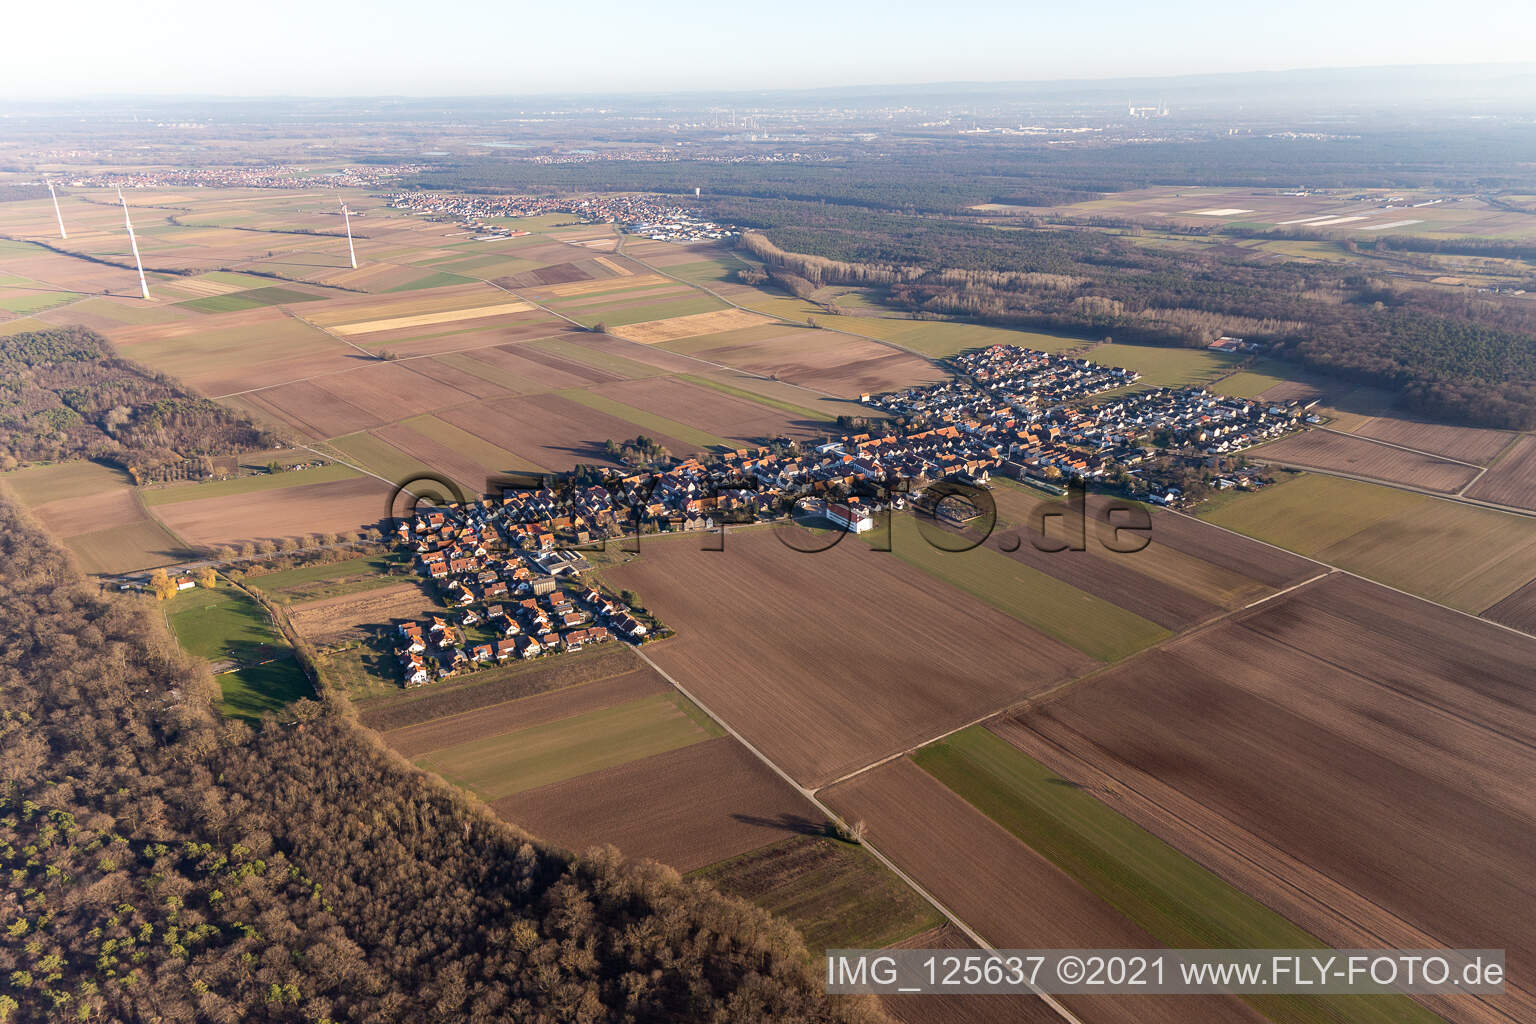 Ortsteil Hayna in Herxheim bei Landau/Pfalz im Bundesland Rheinland-Pfalz, Deutschland aus der Drohnenperspektive